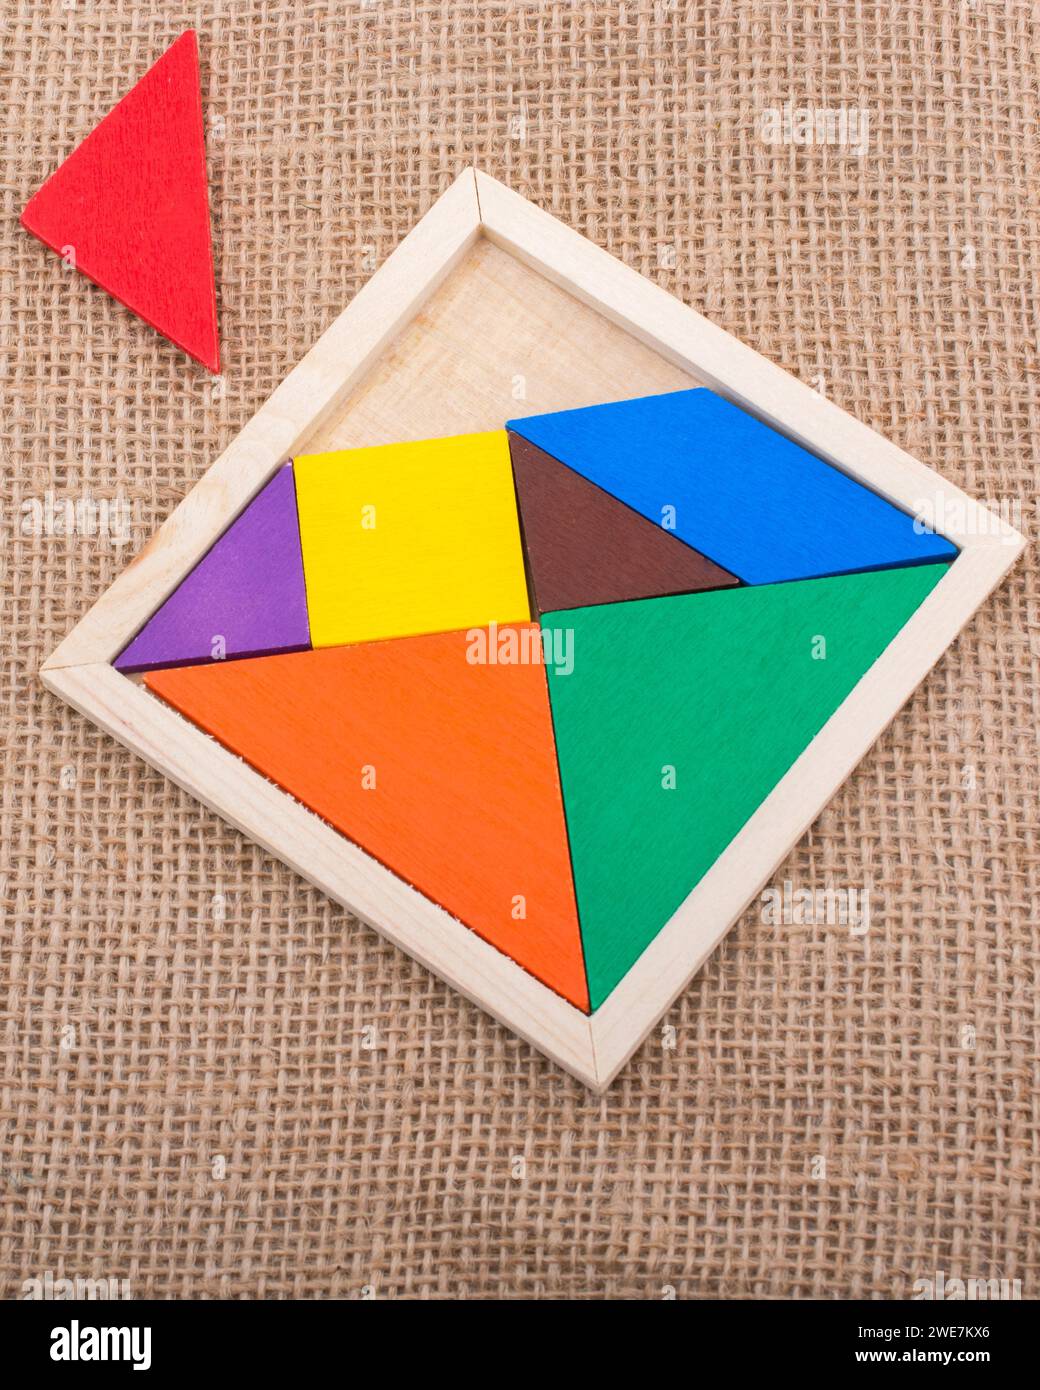 Piezas coloridas de un cuadrado tangram Foto de stock